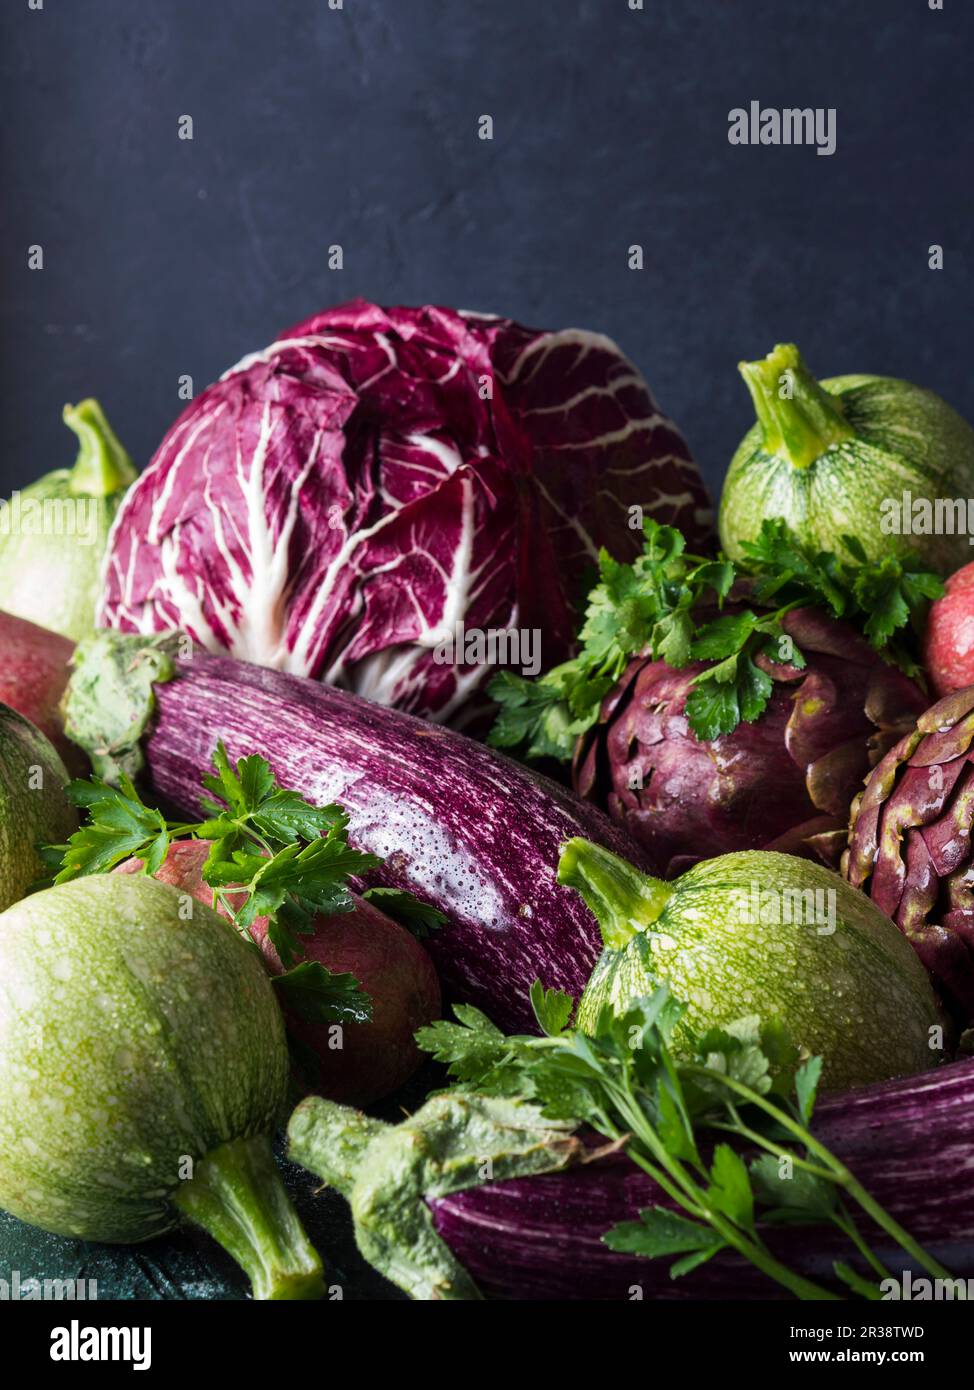 Auswahl an rohem grünen und violetten Gemüse - Zichorie, rote Kartoffeln, Zucchini, Artischocken und Auberginen - auf schwarzem Hintergrund Stockfoto